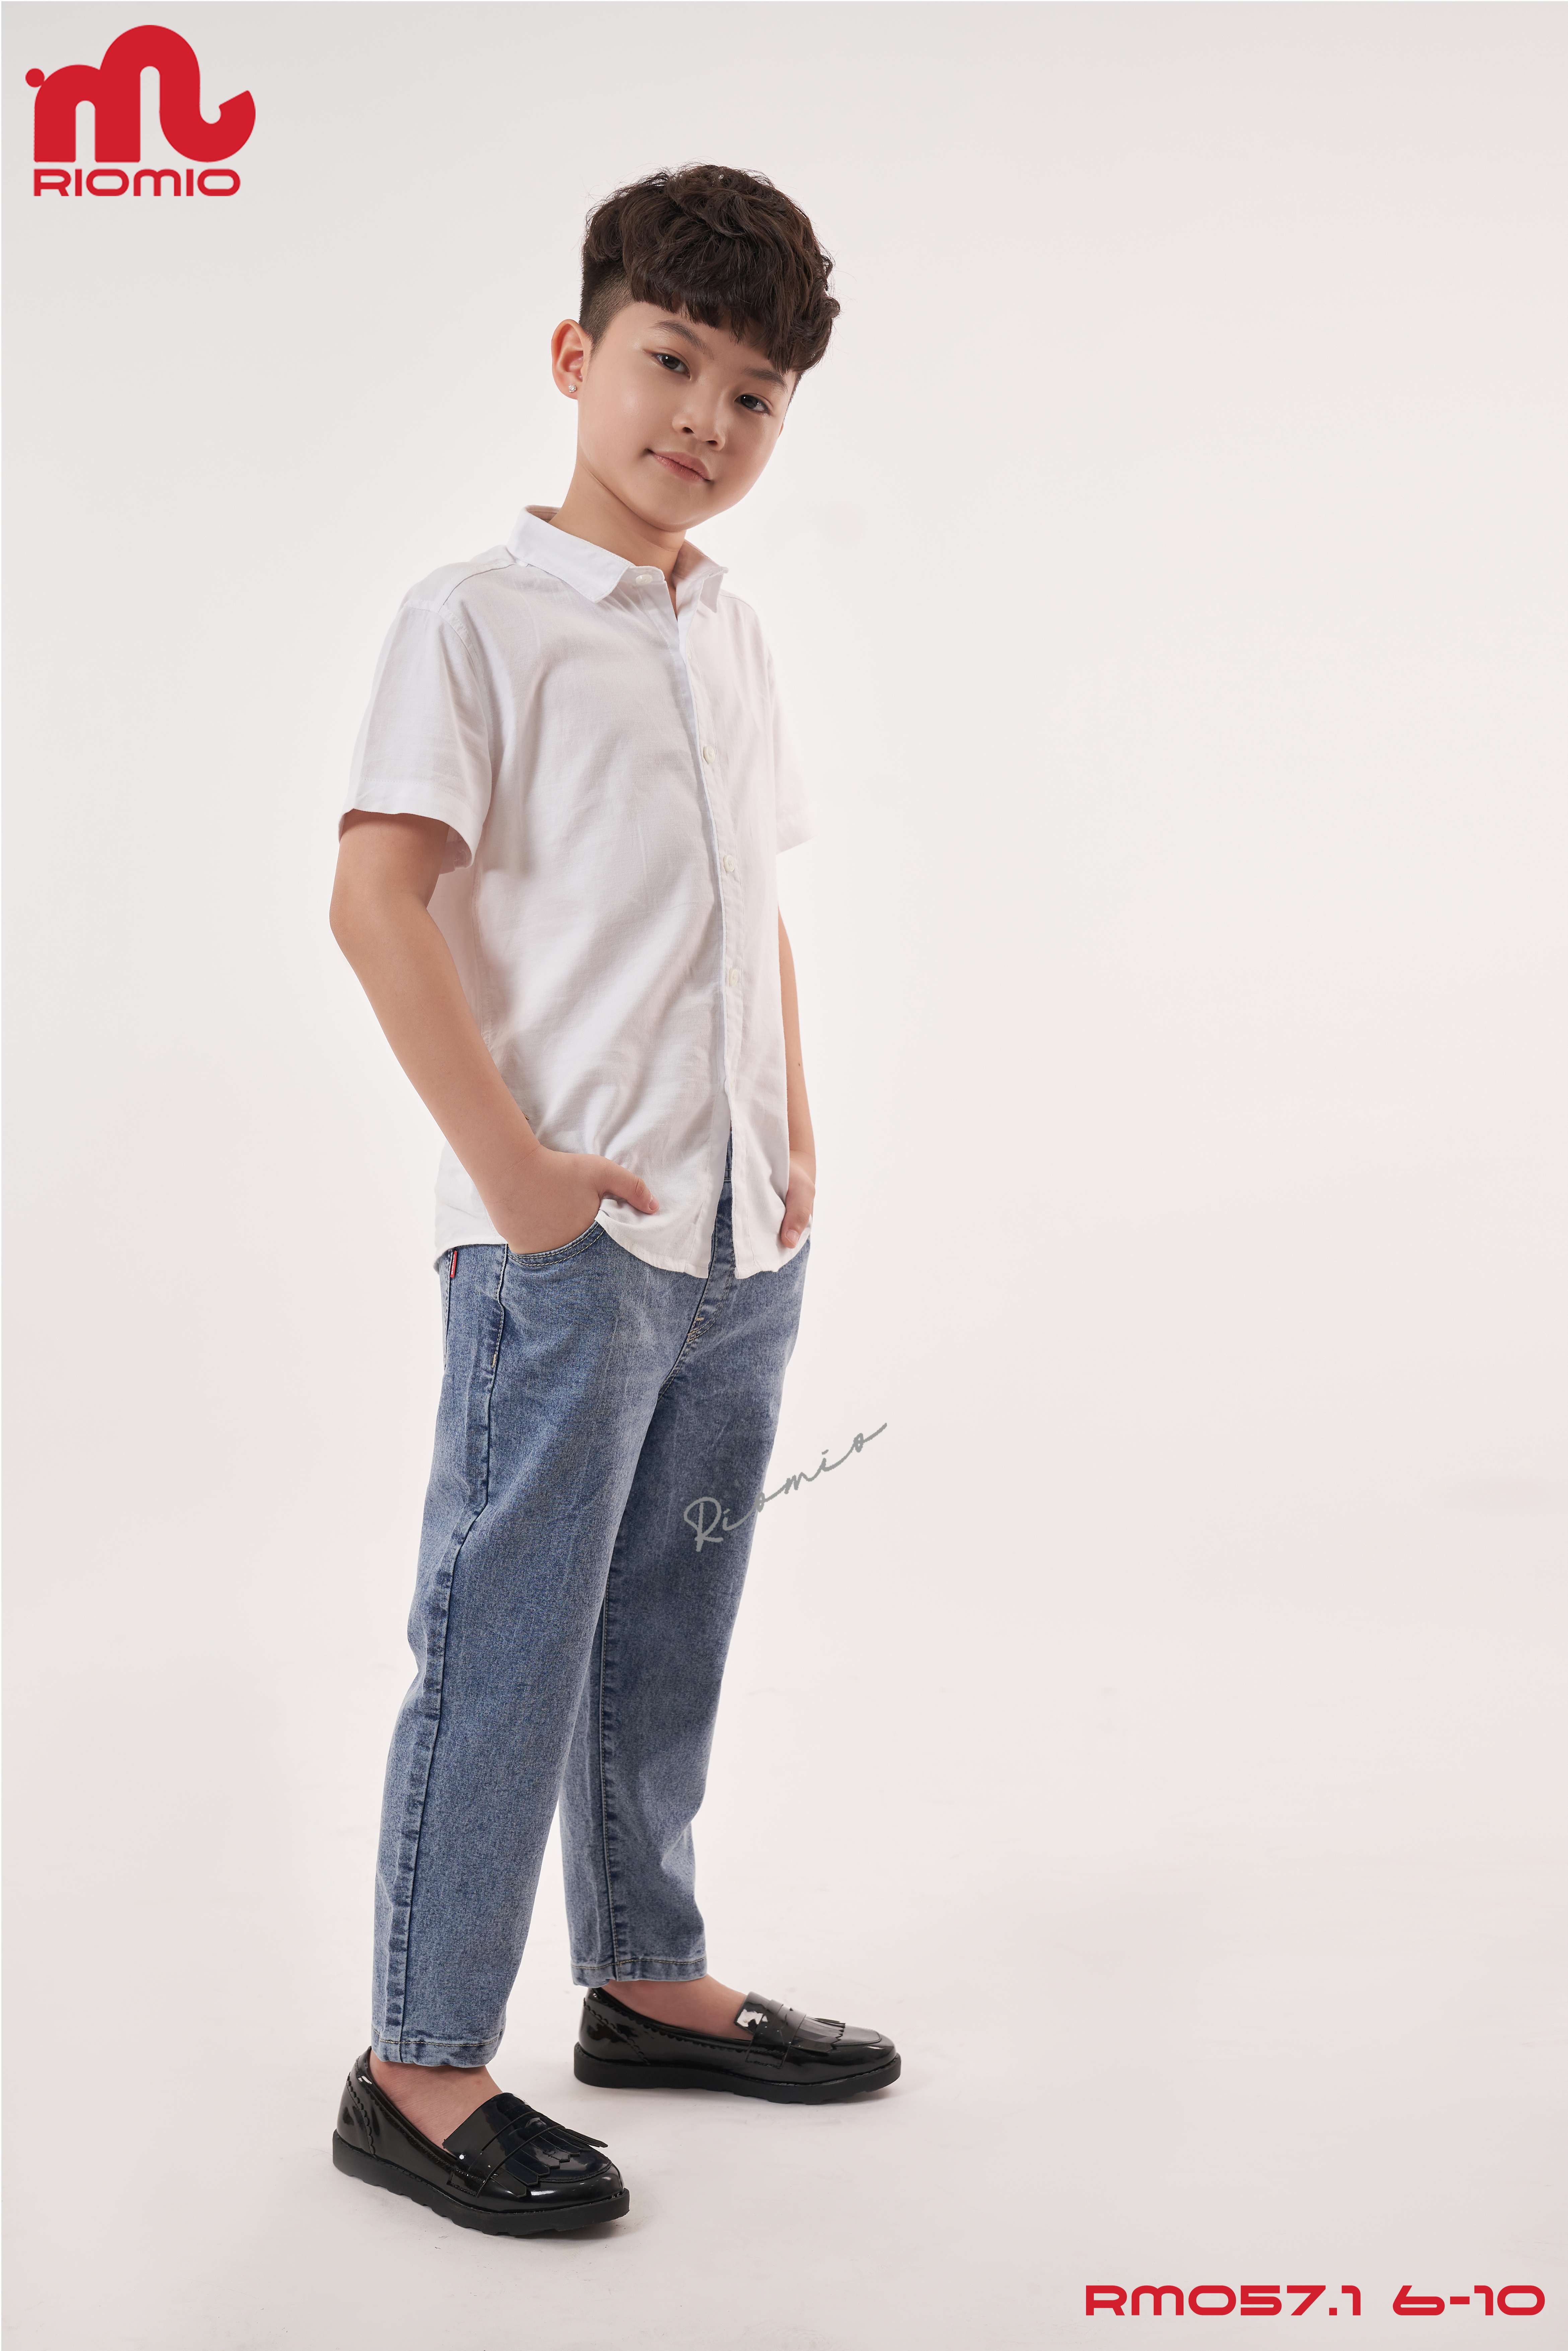 Quần jeans bé trai [Denim Cotton USA] chính hãng RIOMIO – RM057.1 màu light